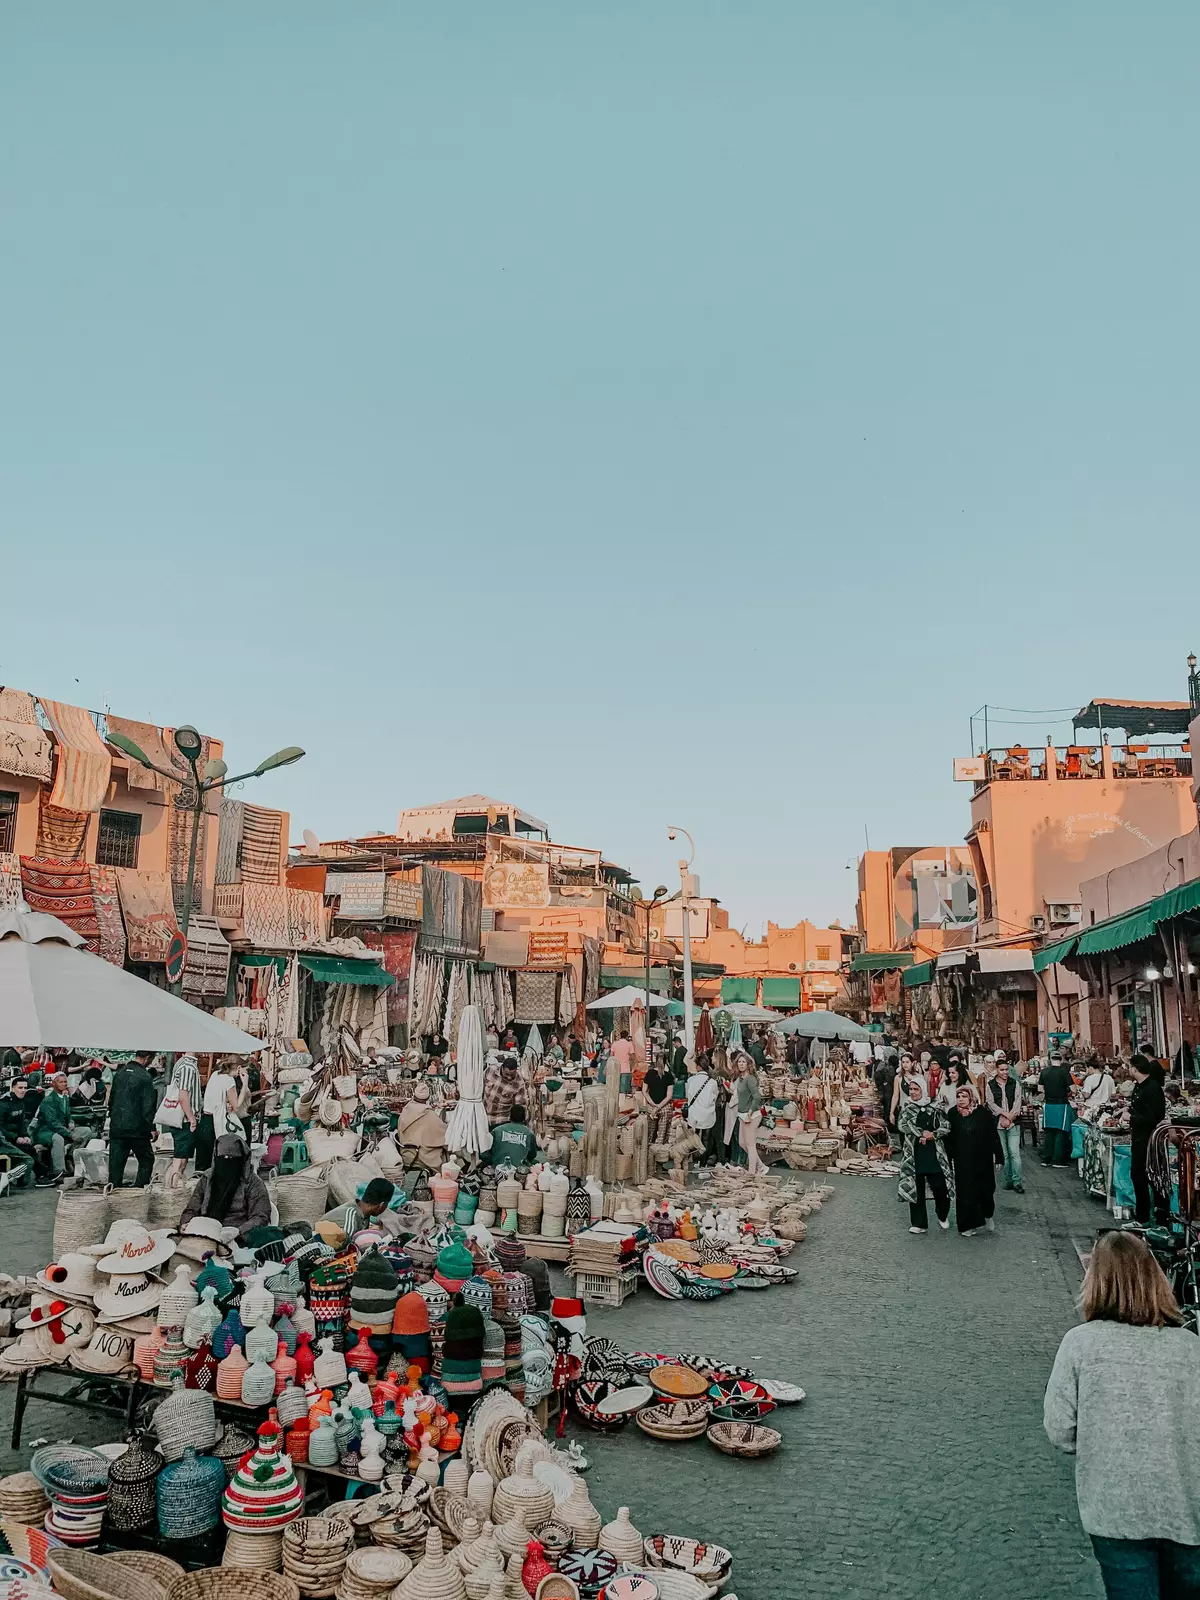 Market in Marrakech 